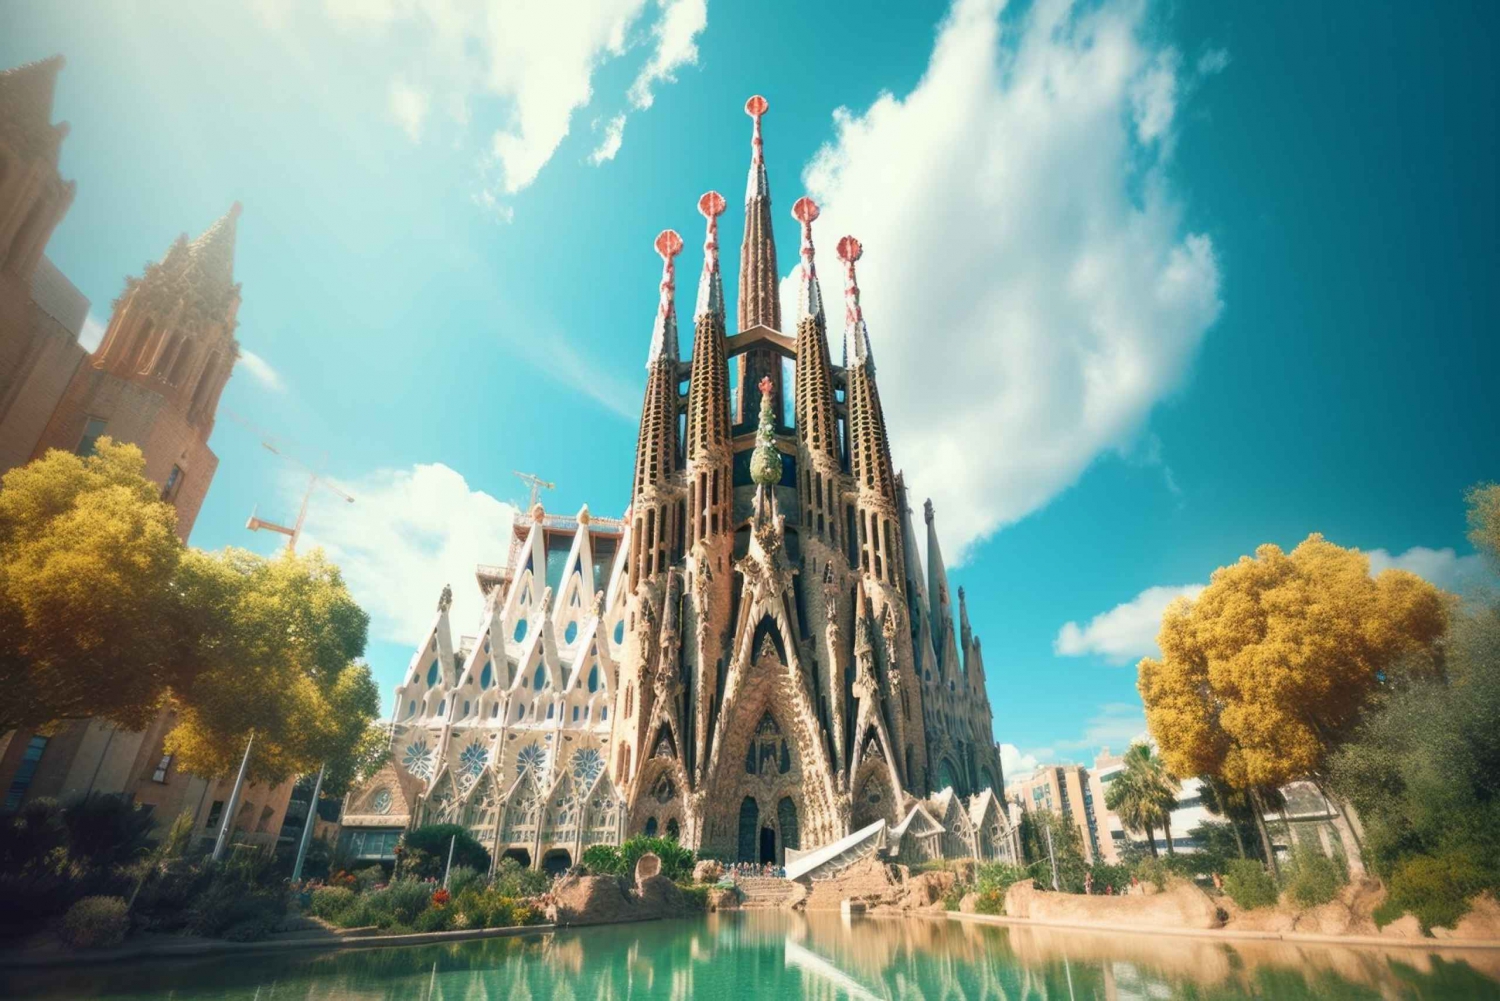 La Barcelona de Gaudí: Sagrada Familia, Casa Batlló y Milà Tour